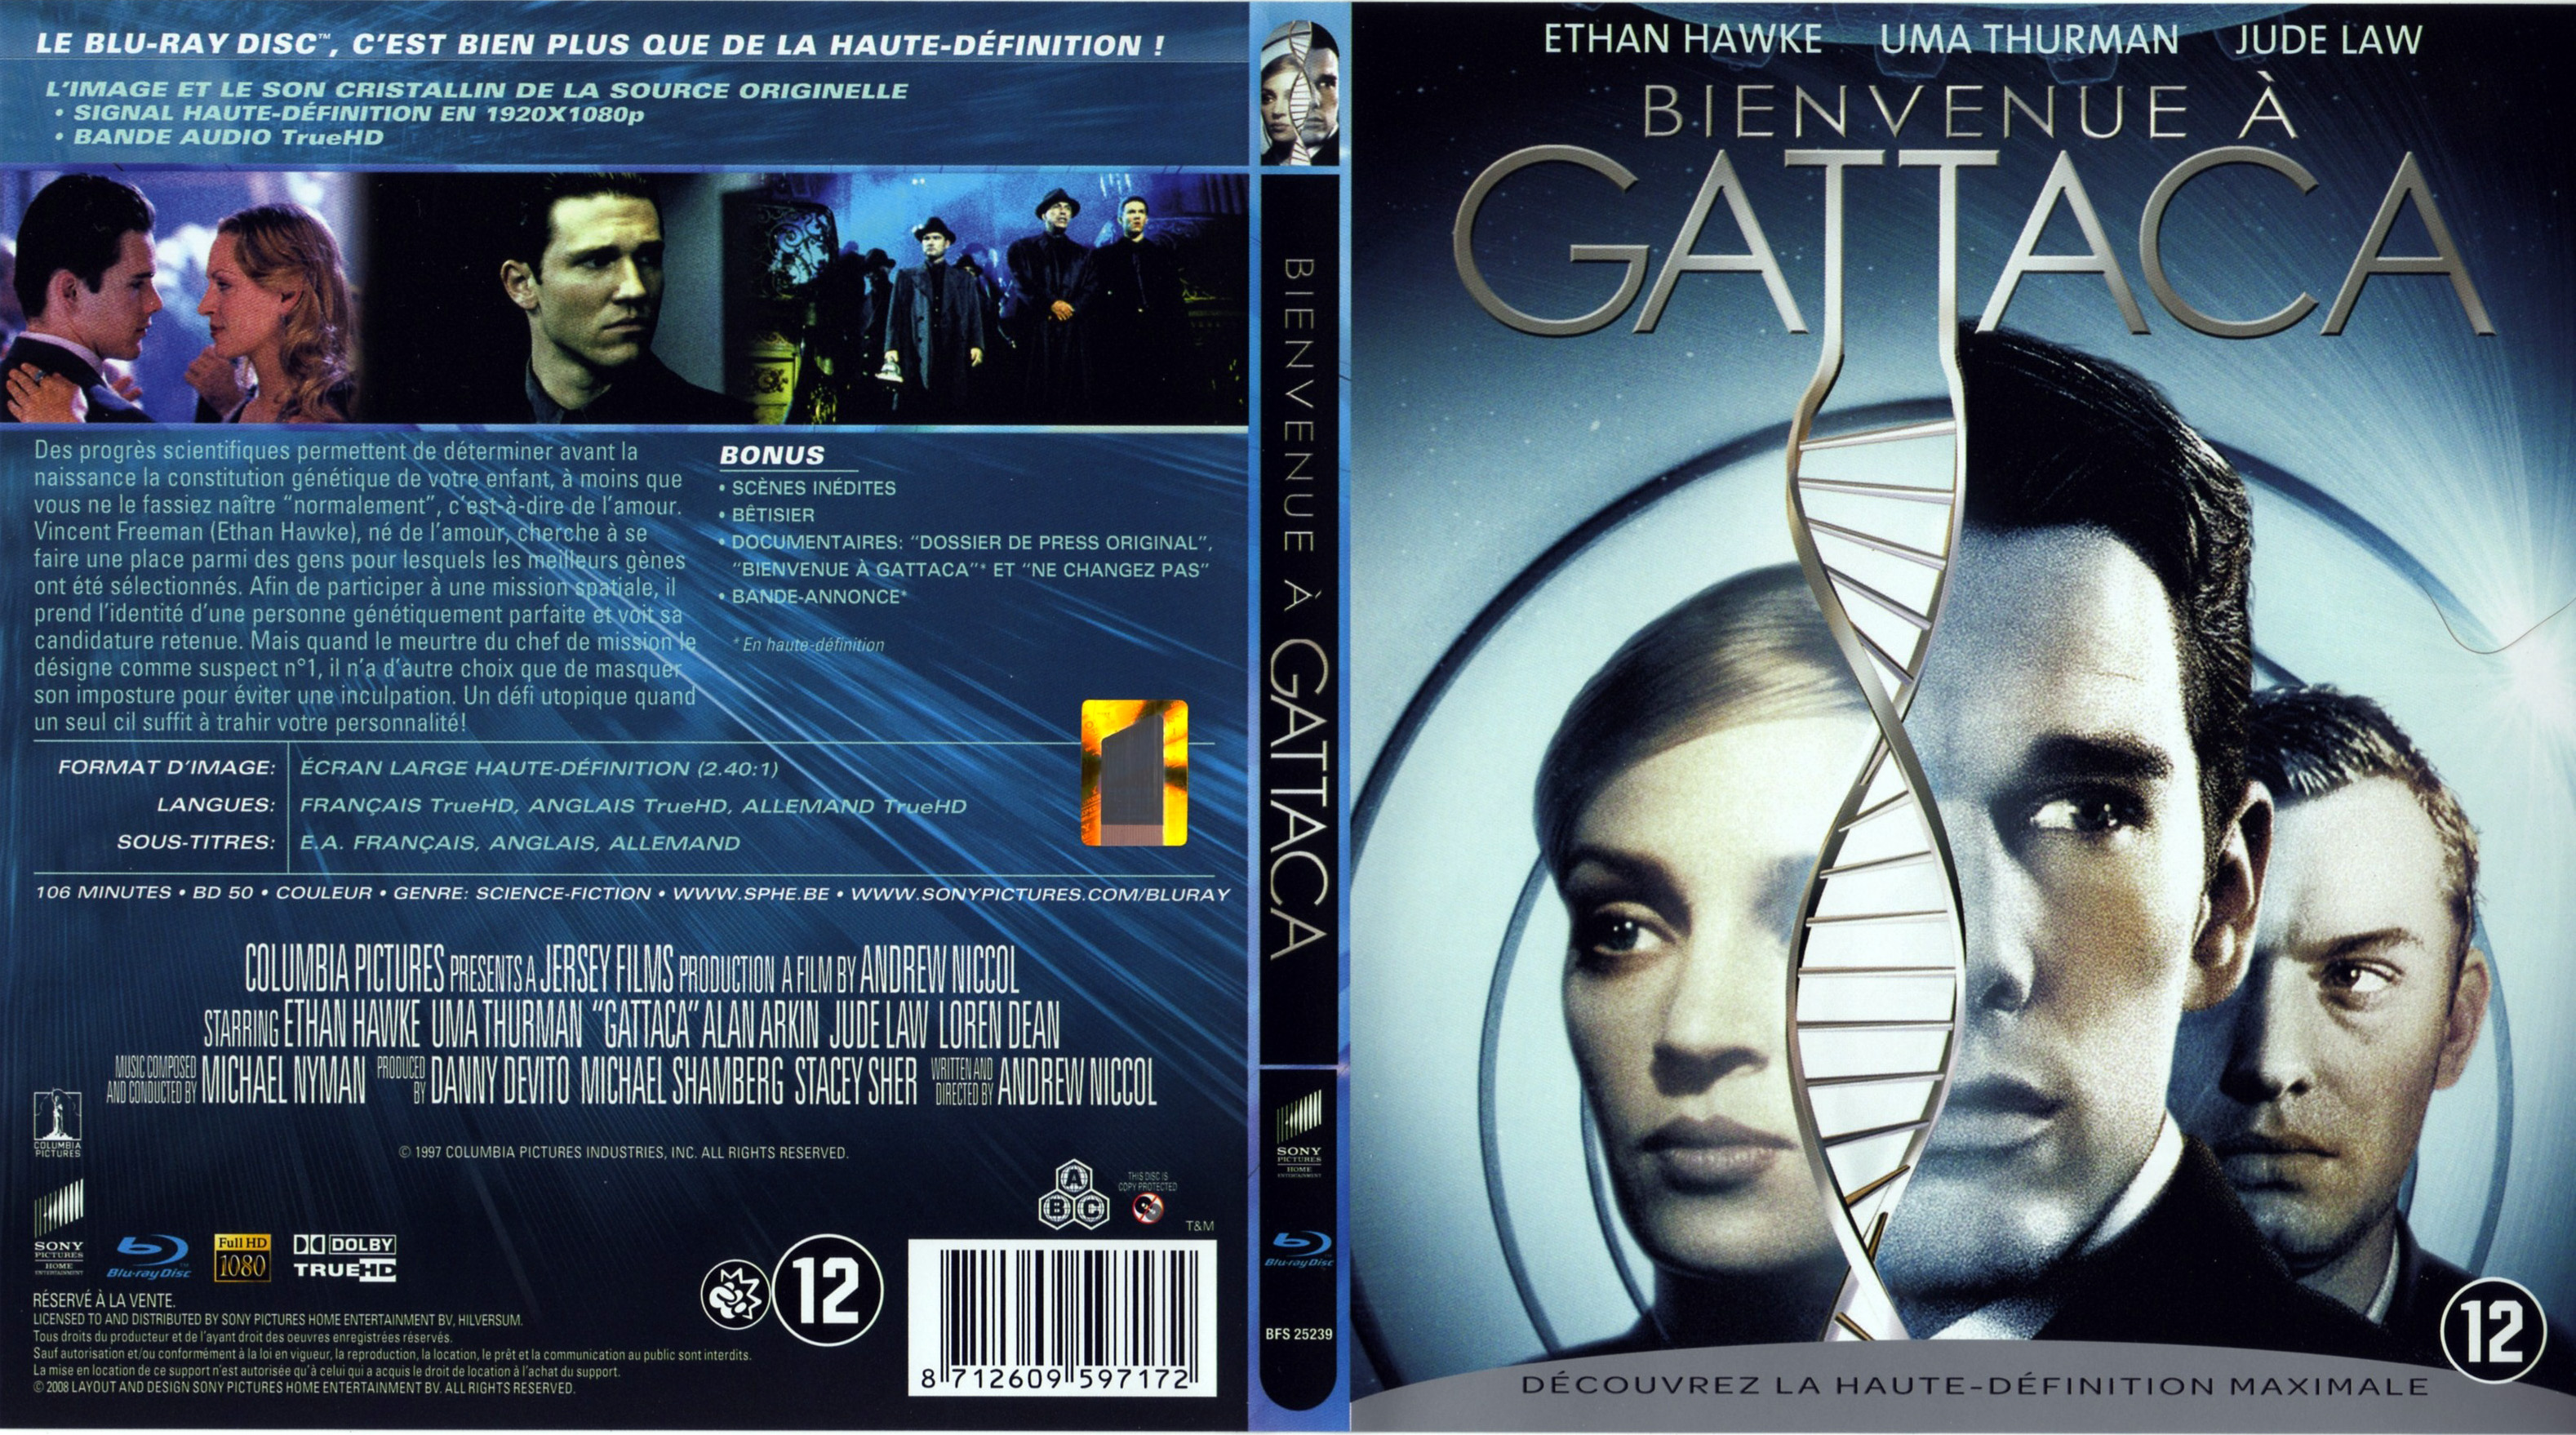 Jaquette DVD Bienvenue  Gattaca (BLU-RAY)